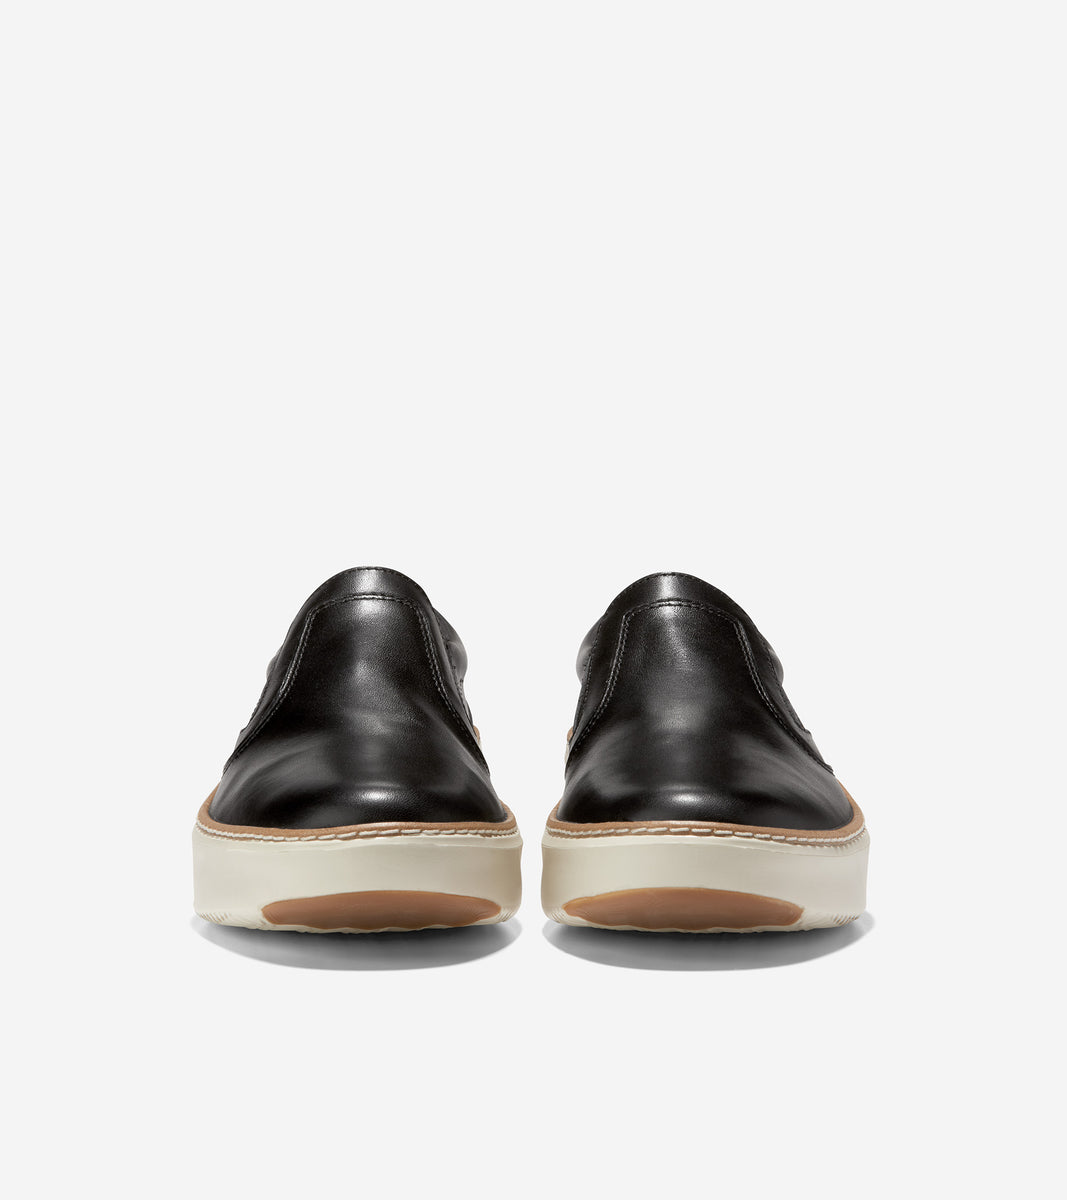 Women's GrandPrø Topspin Slip-On Sneaker